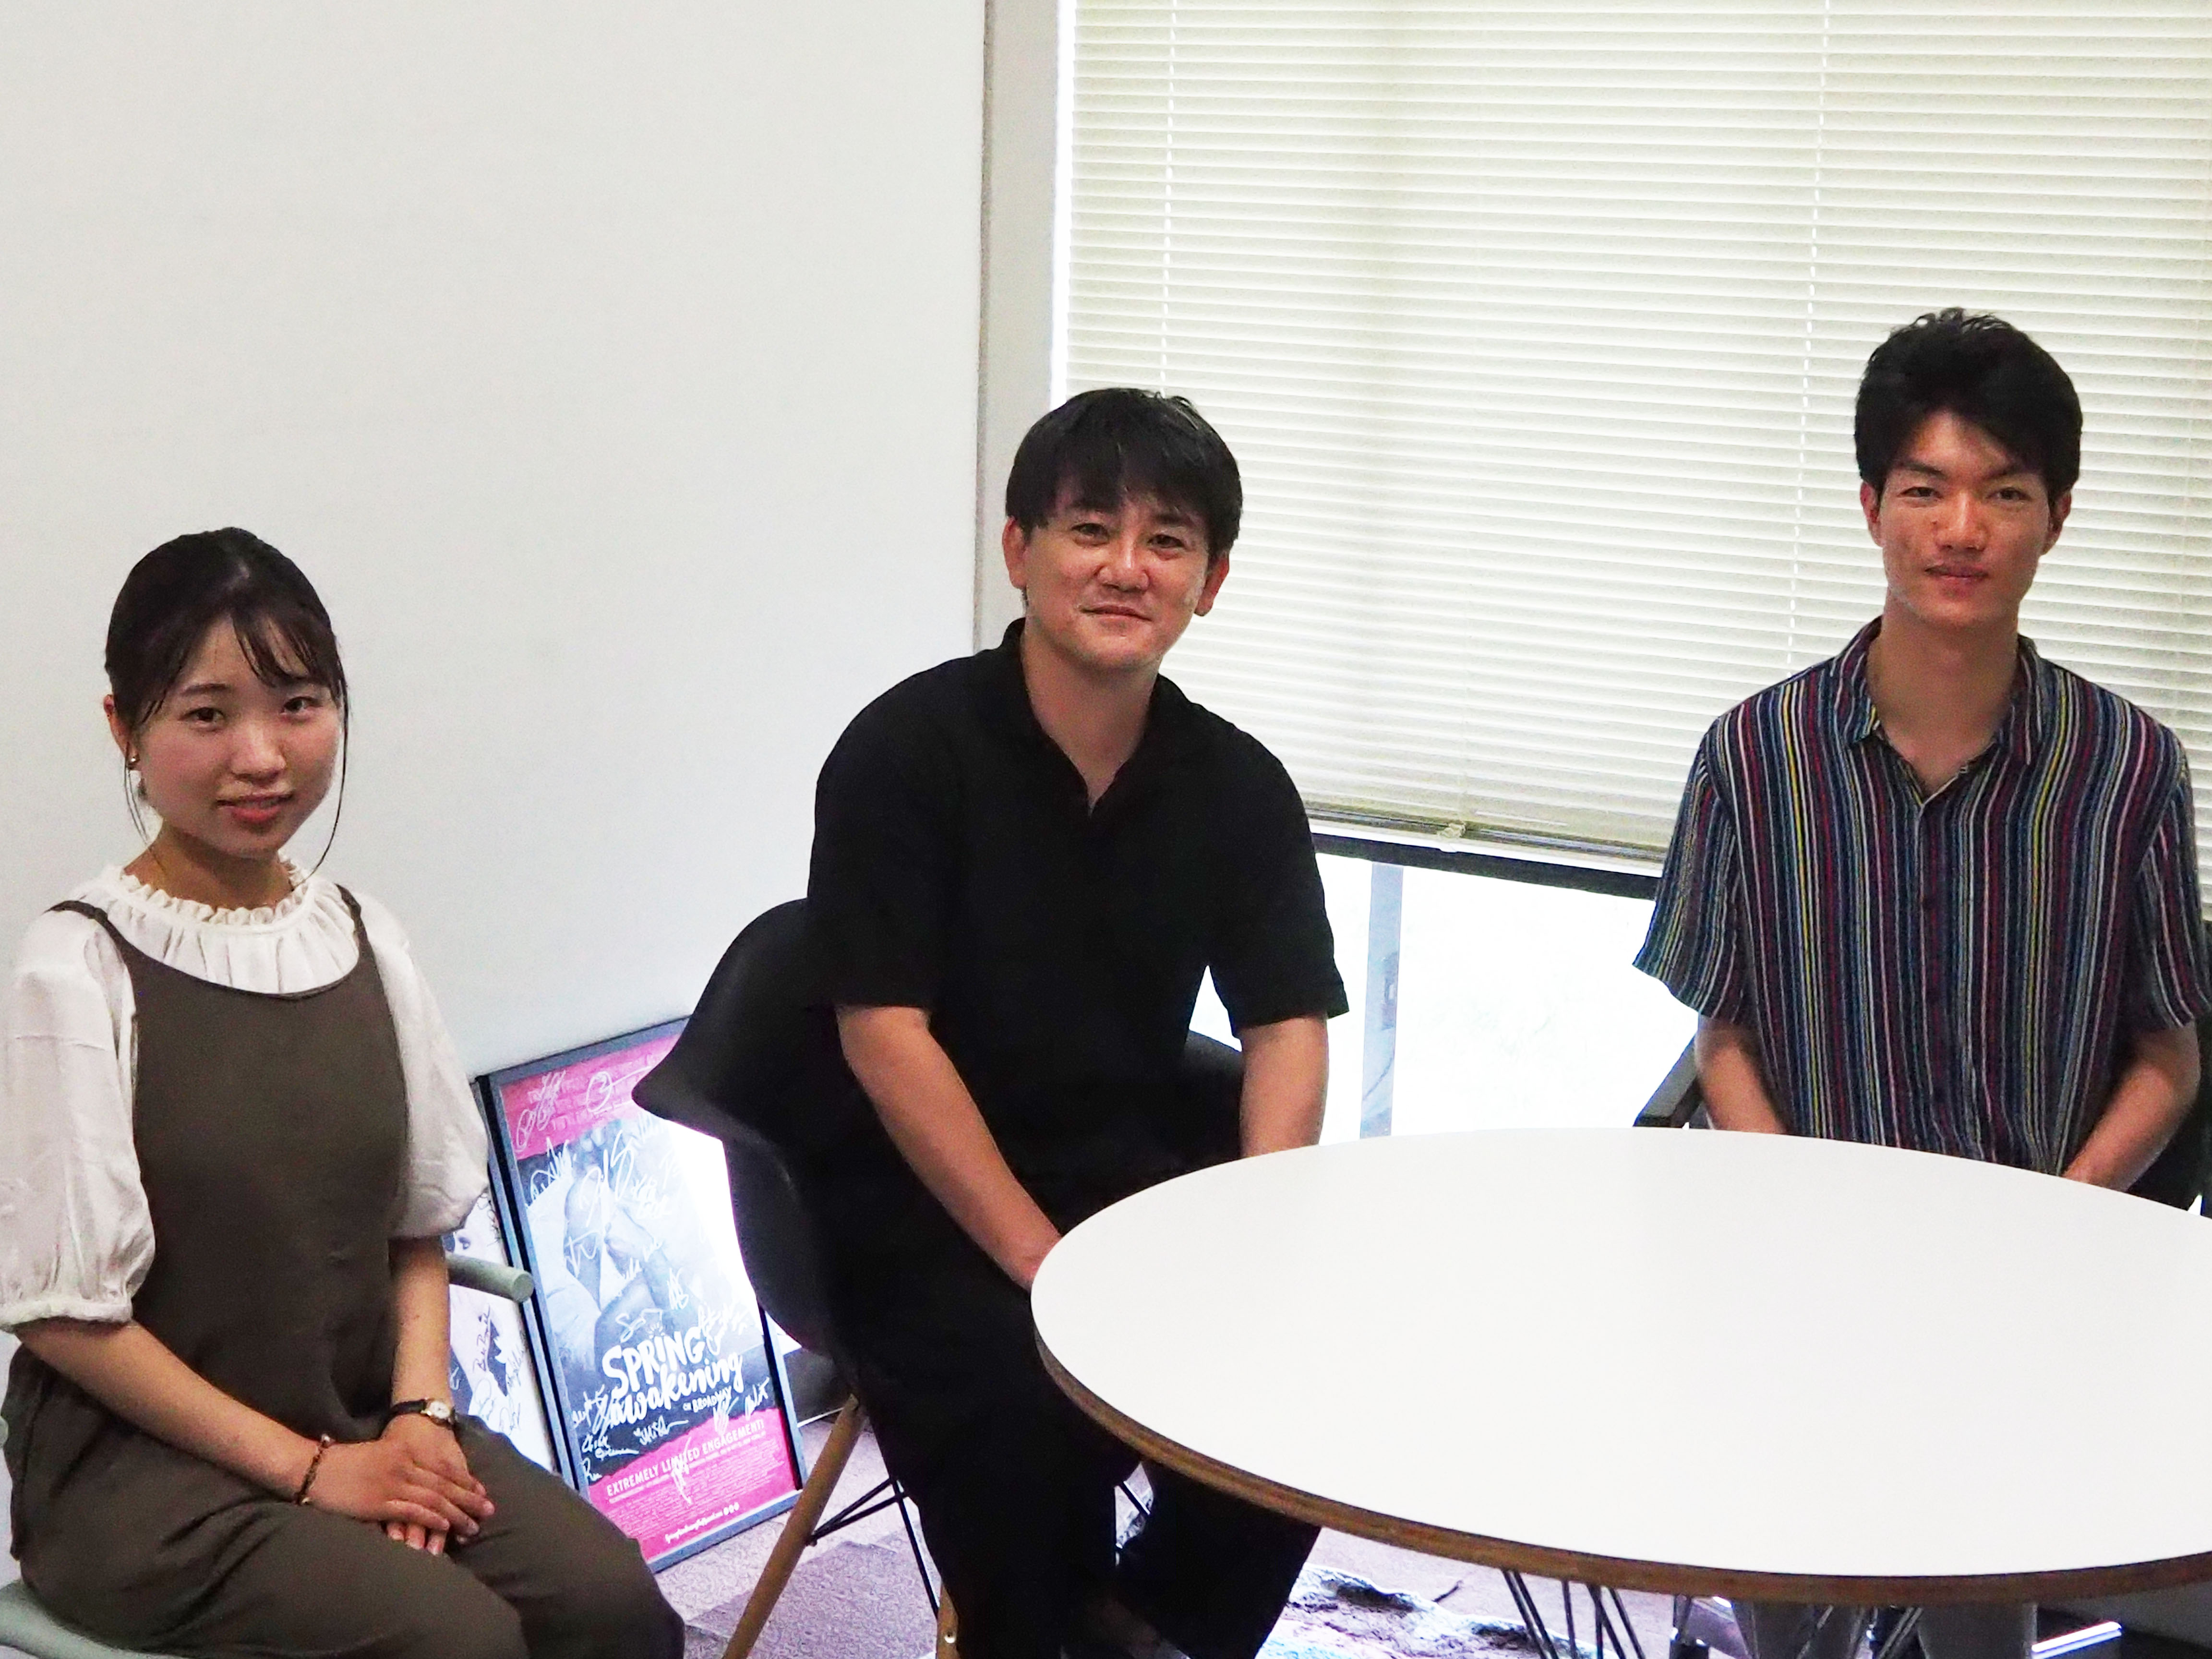 インタビューの様子：左から志貴、堤先生、砂子阪<br />
※インタビューはマスク着用にて実施しました。